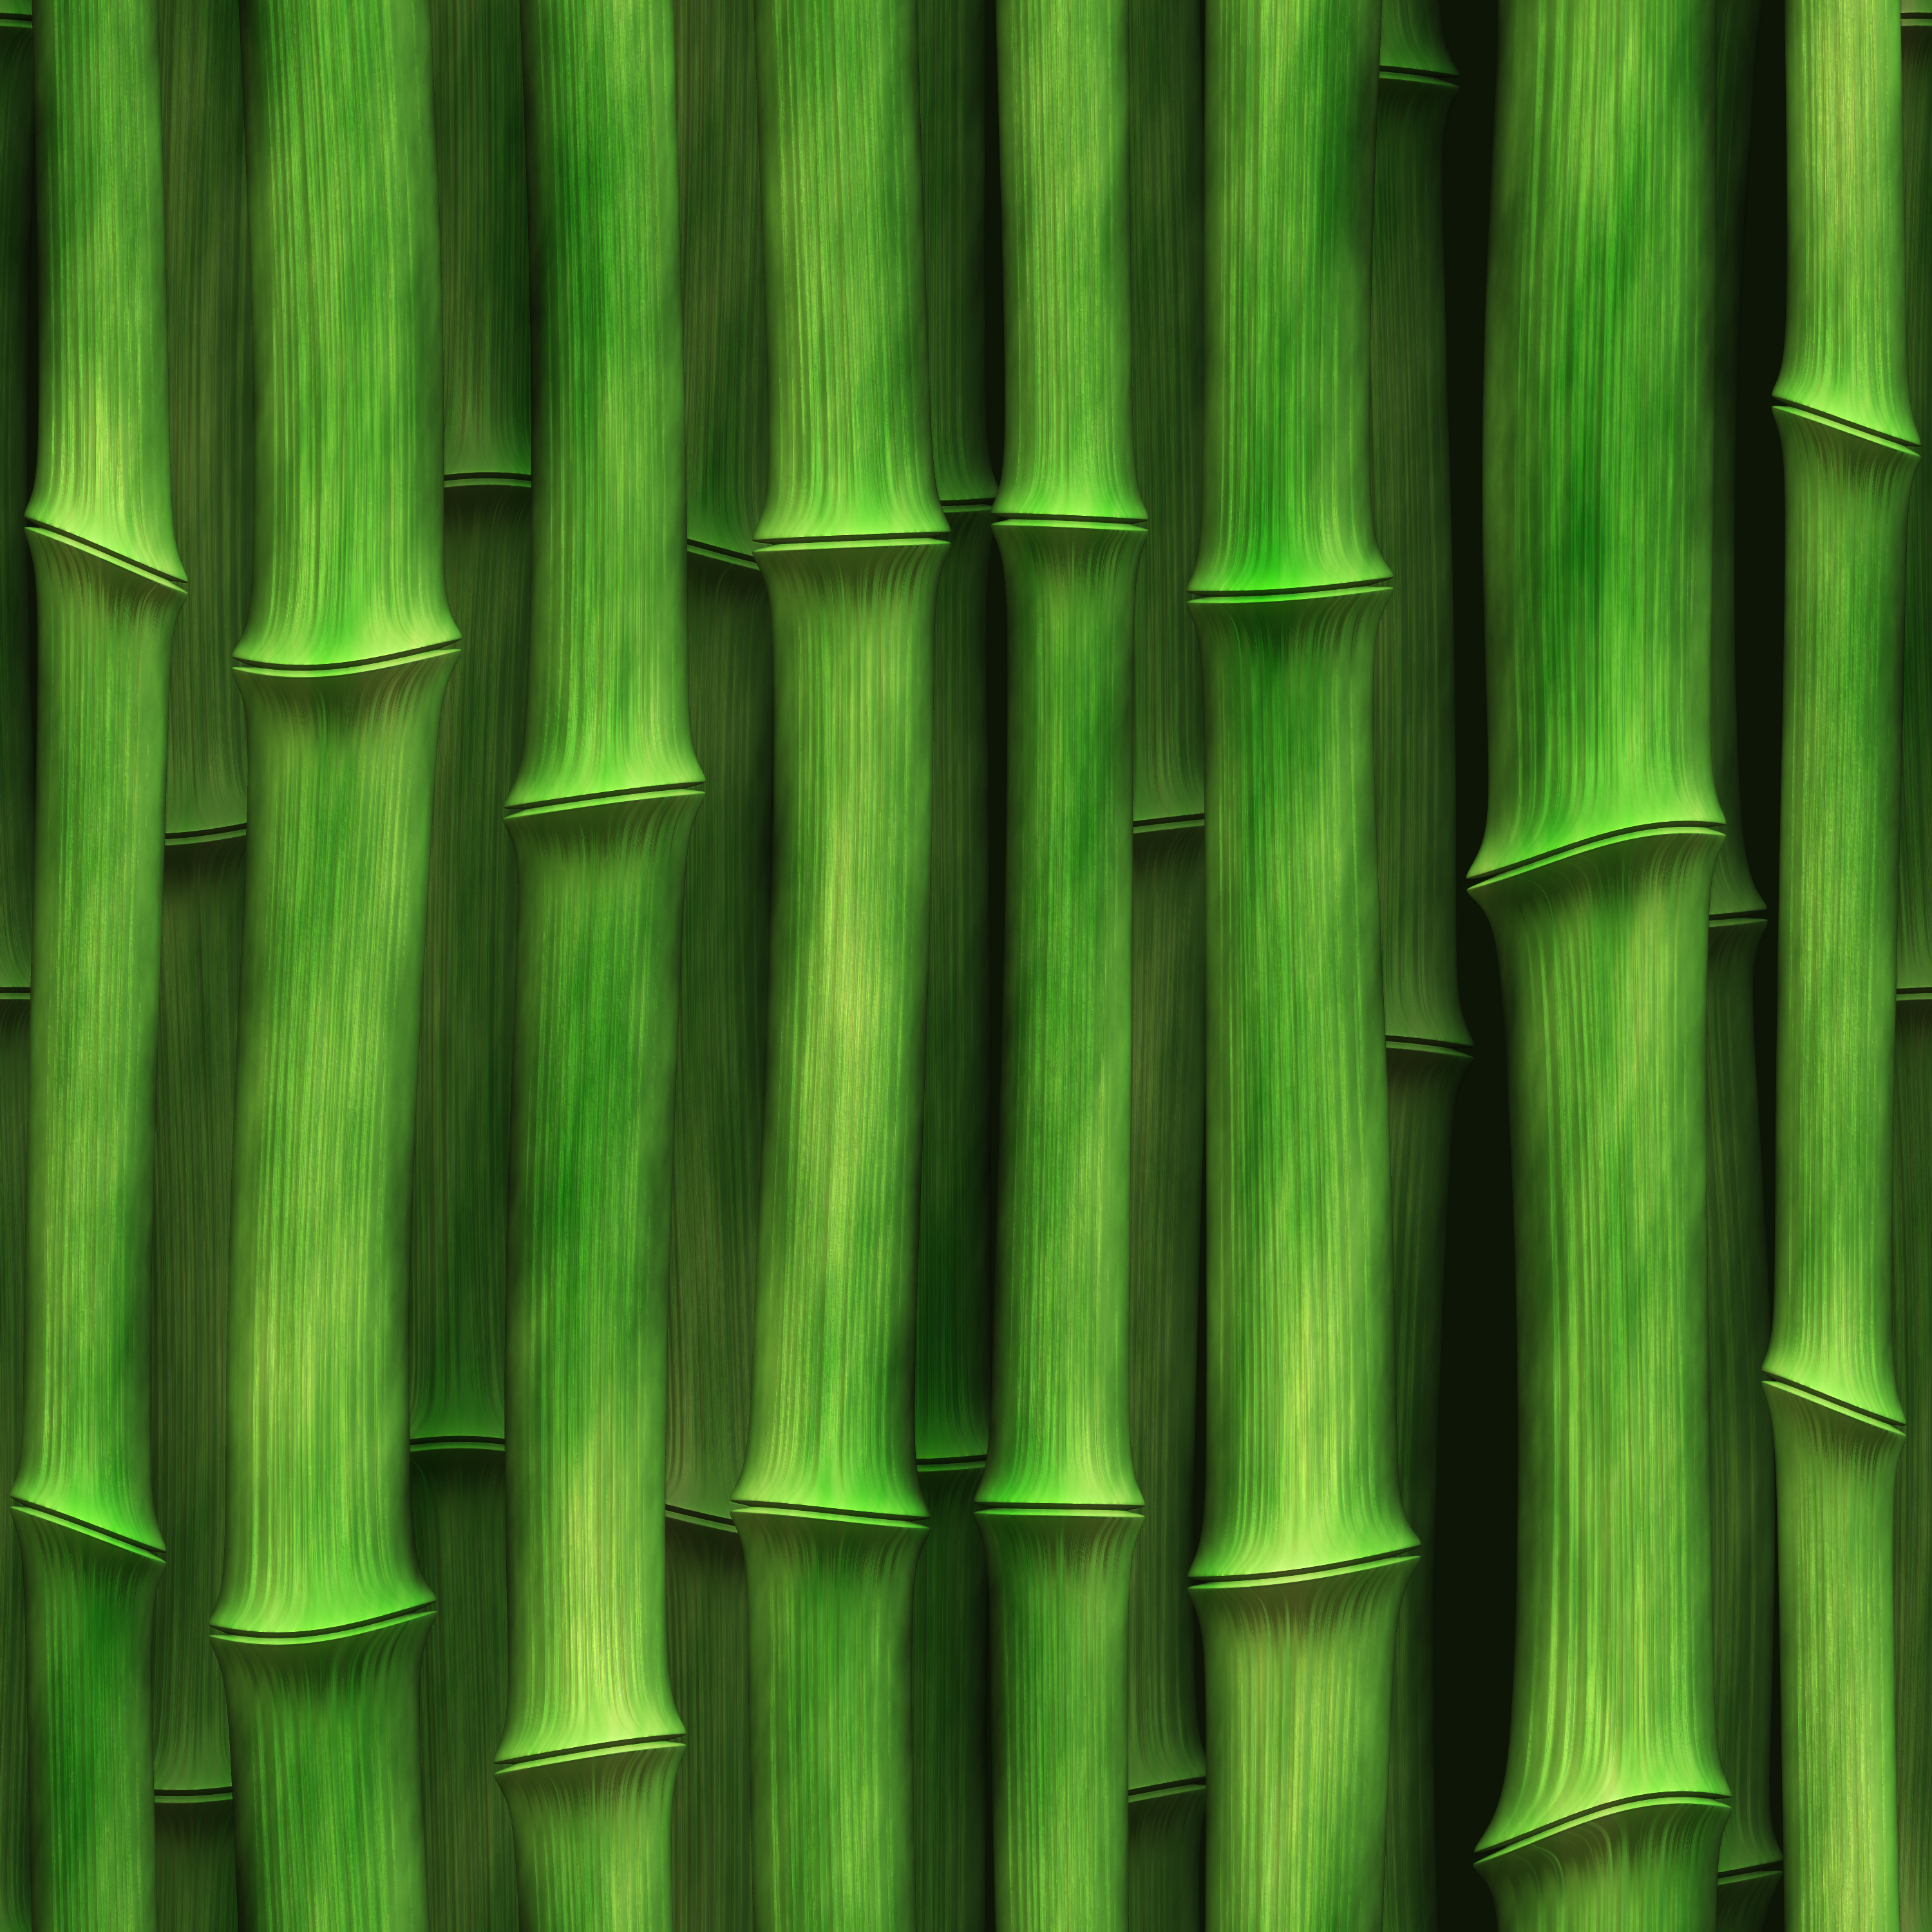 зеленый бамбук, текстура бамбука, green bamboo texture, фото, фон